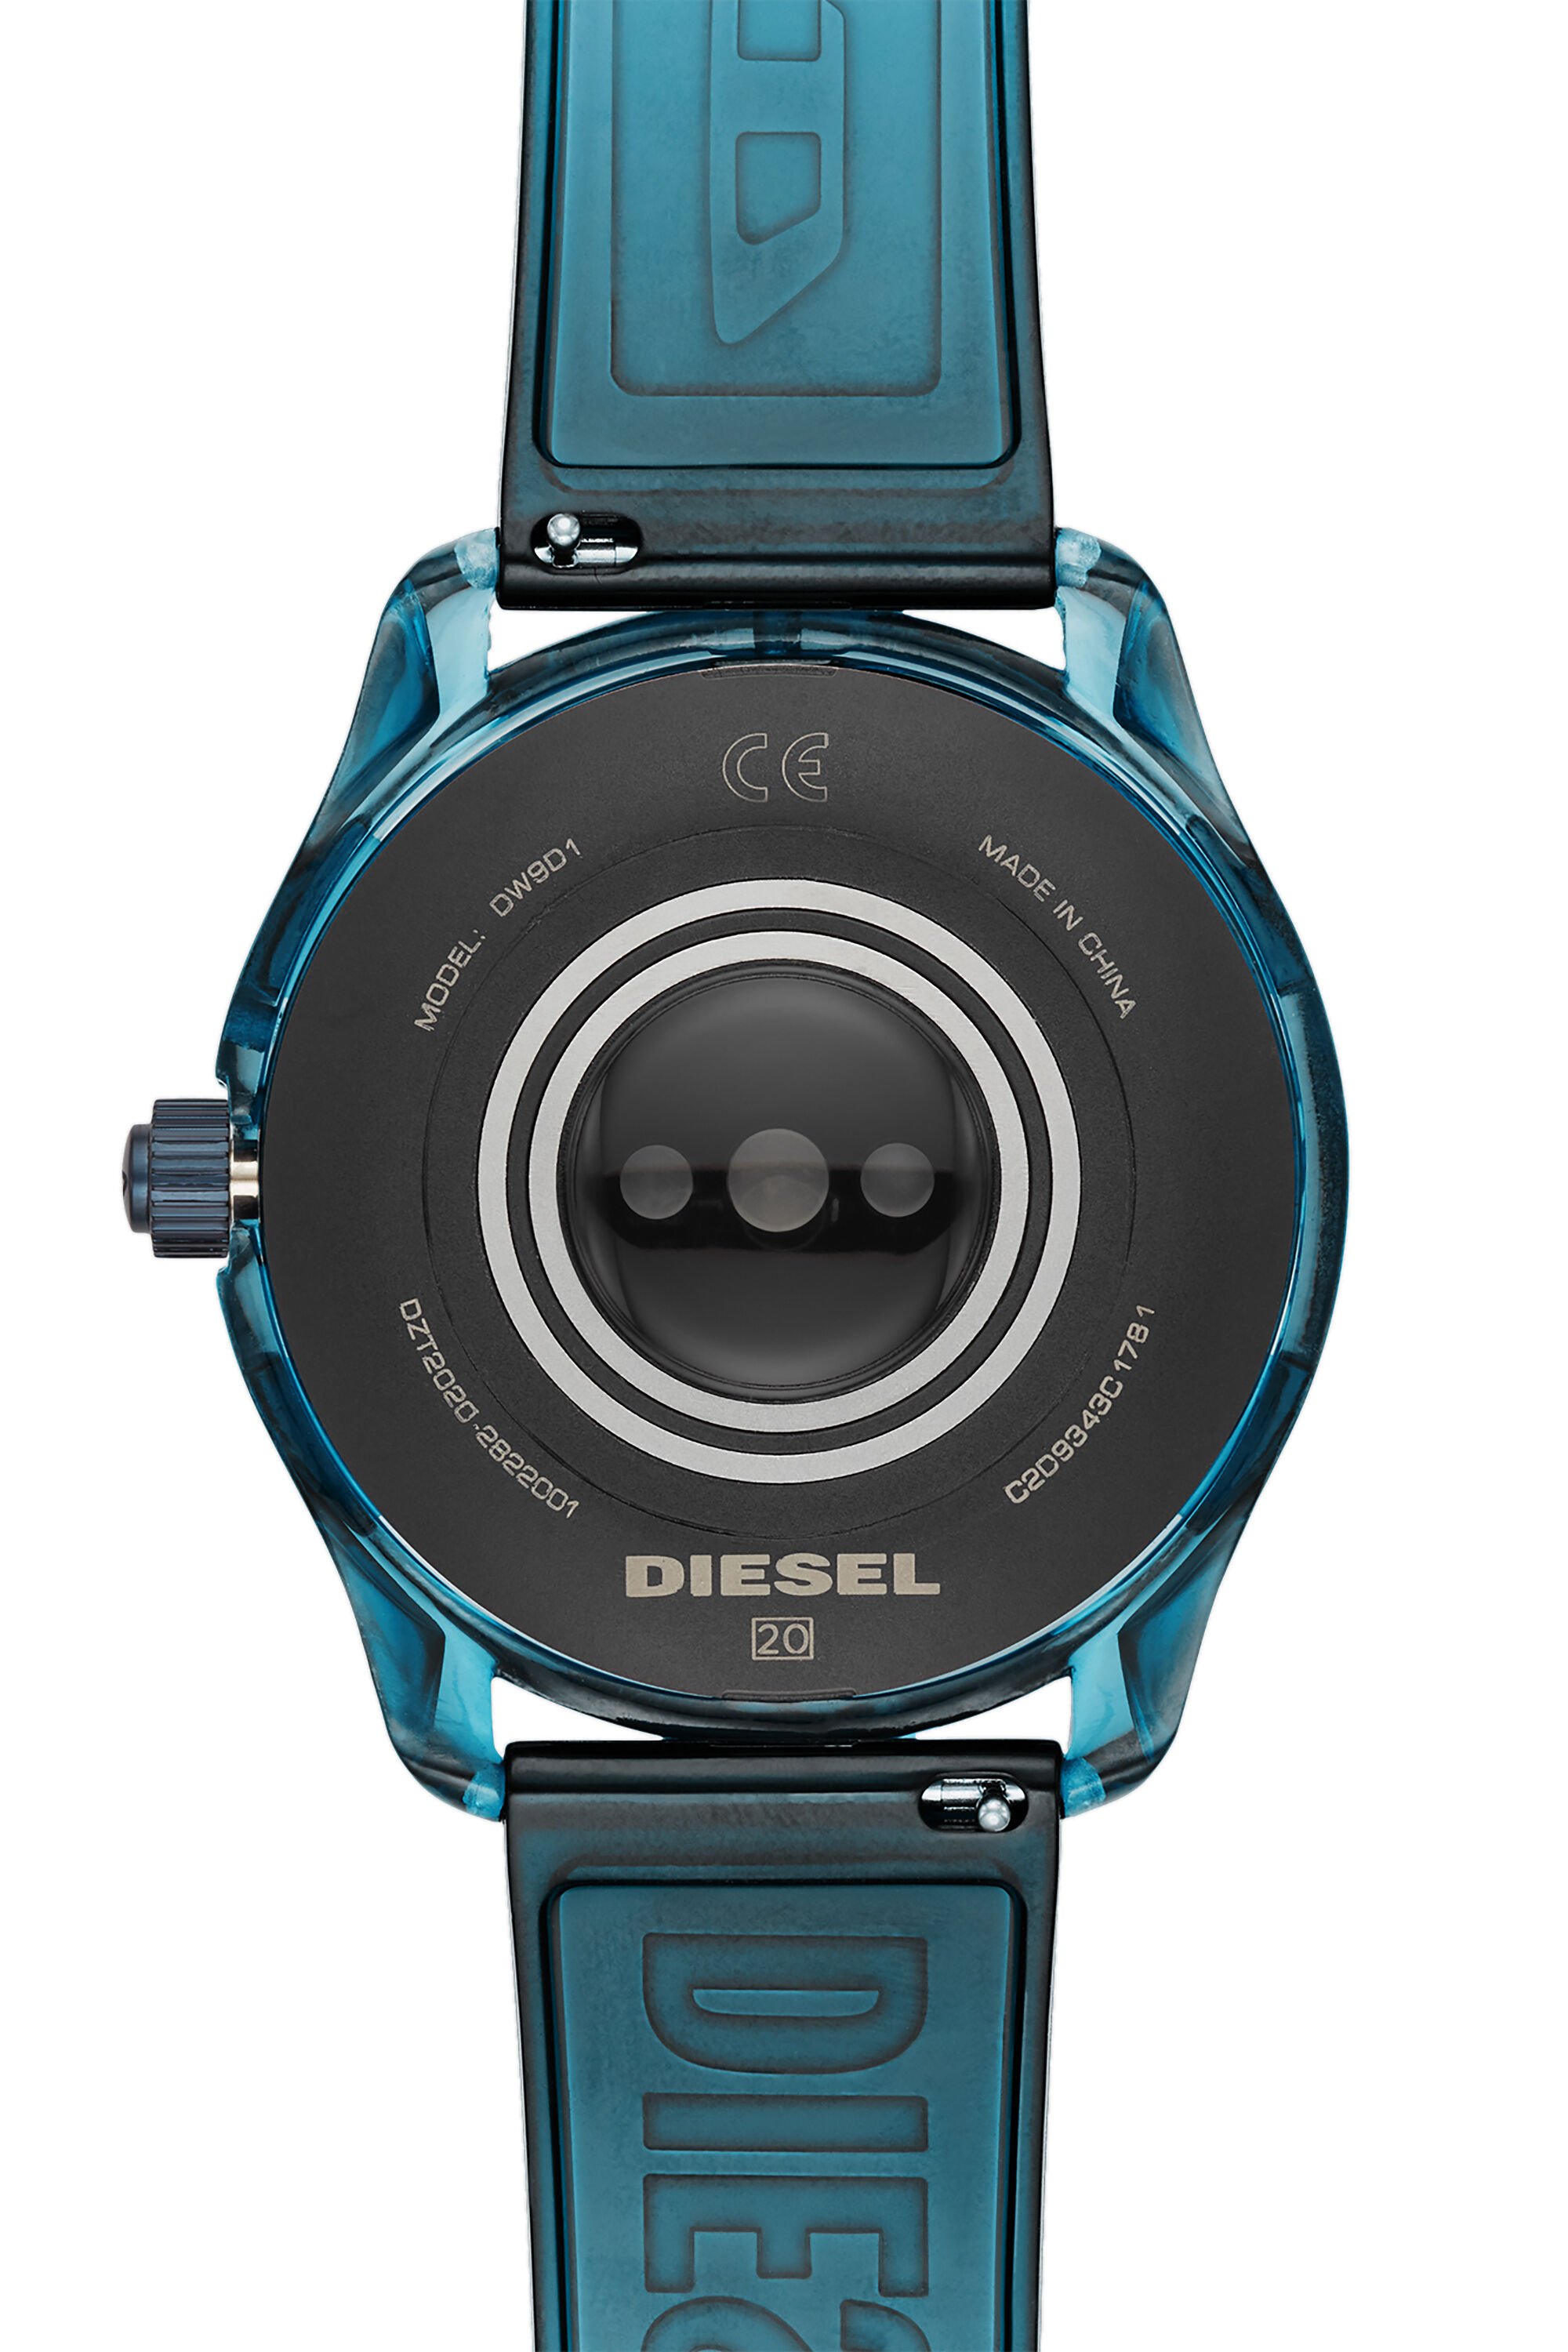 Diesel - DT2020, Blau - Image 4